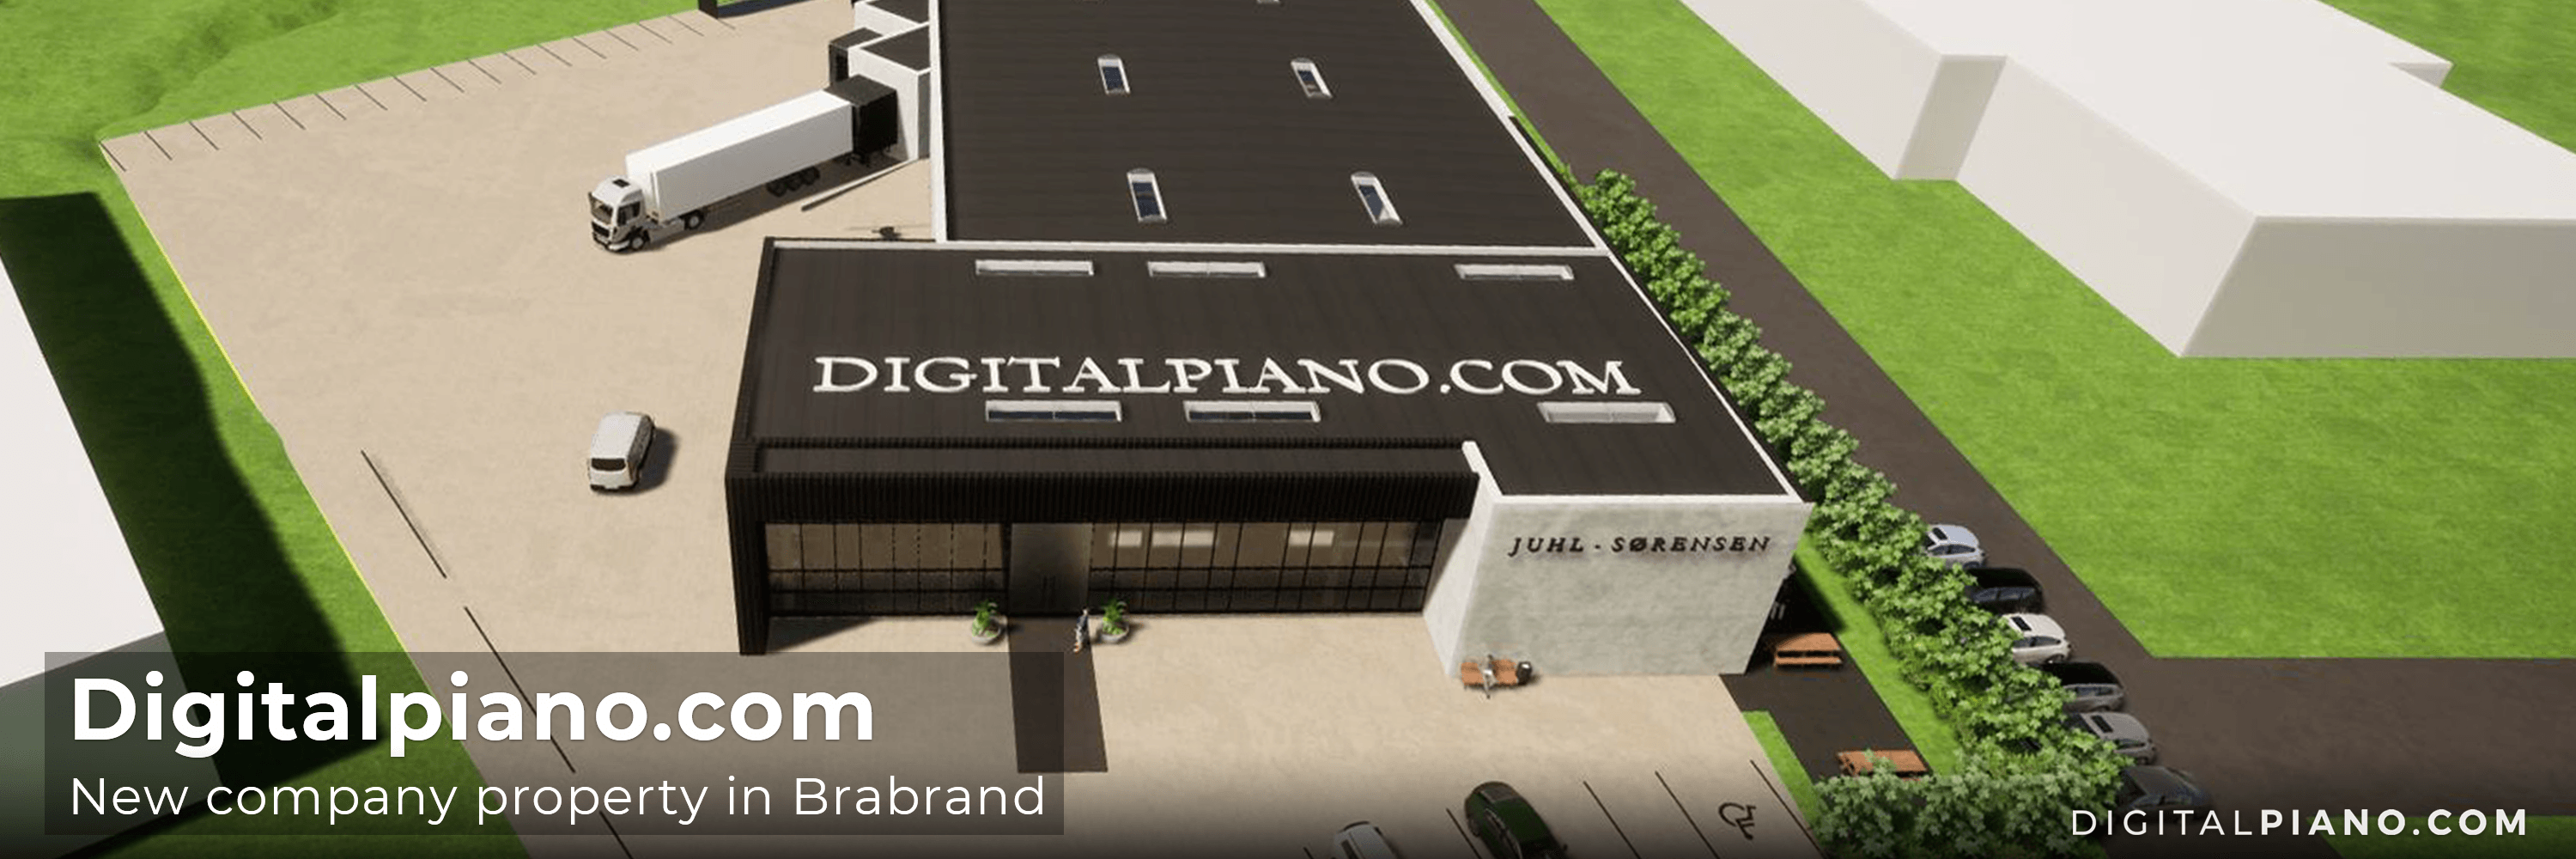 New property for Digitalpiano.com